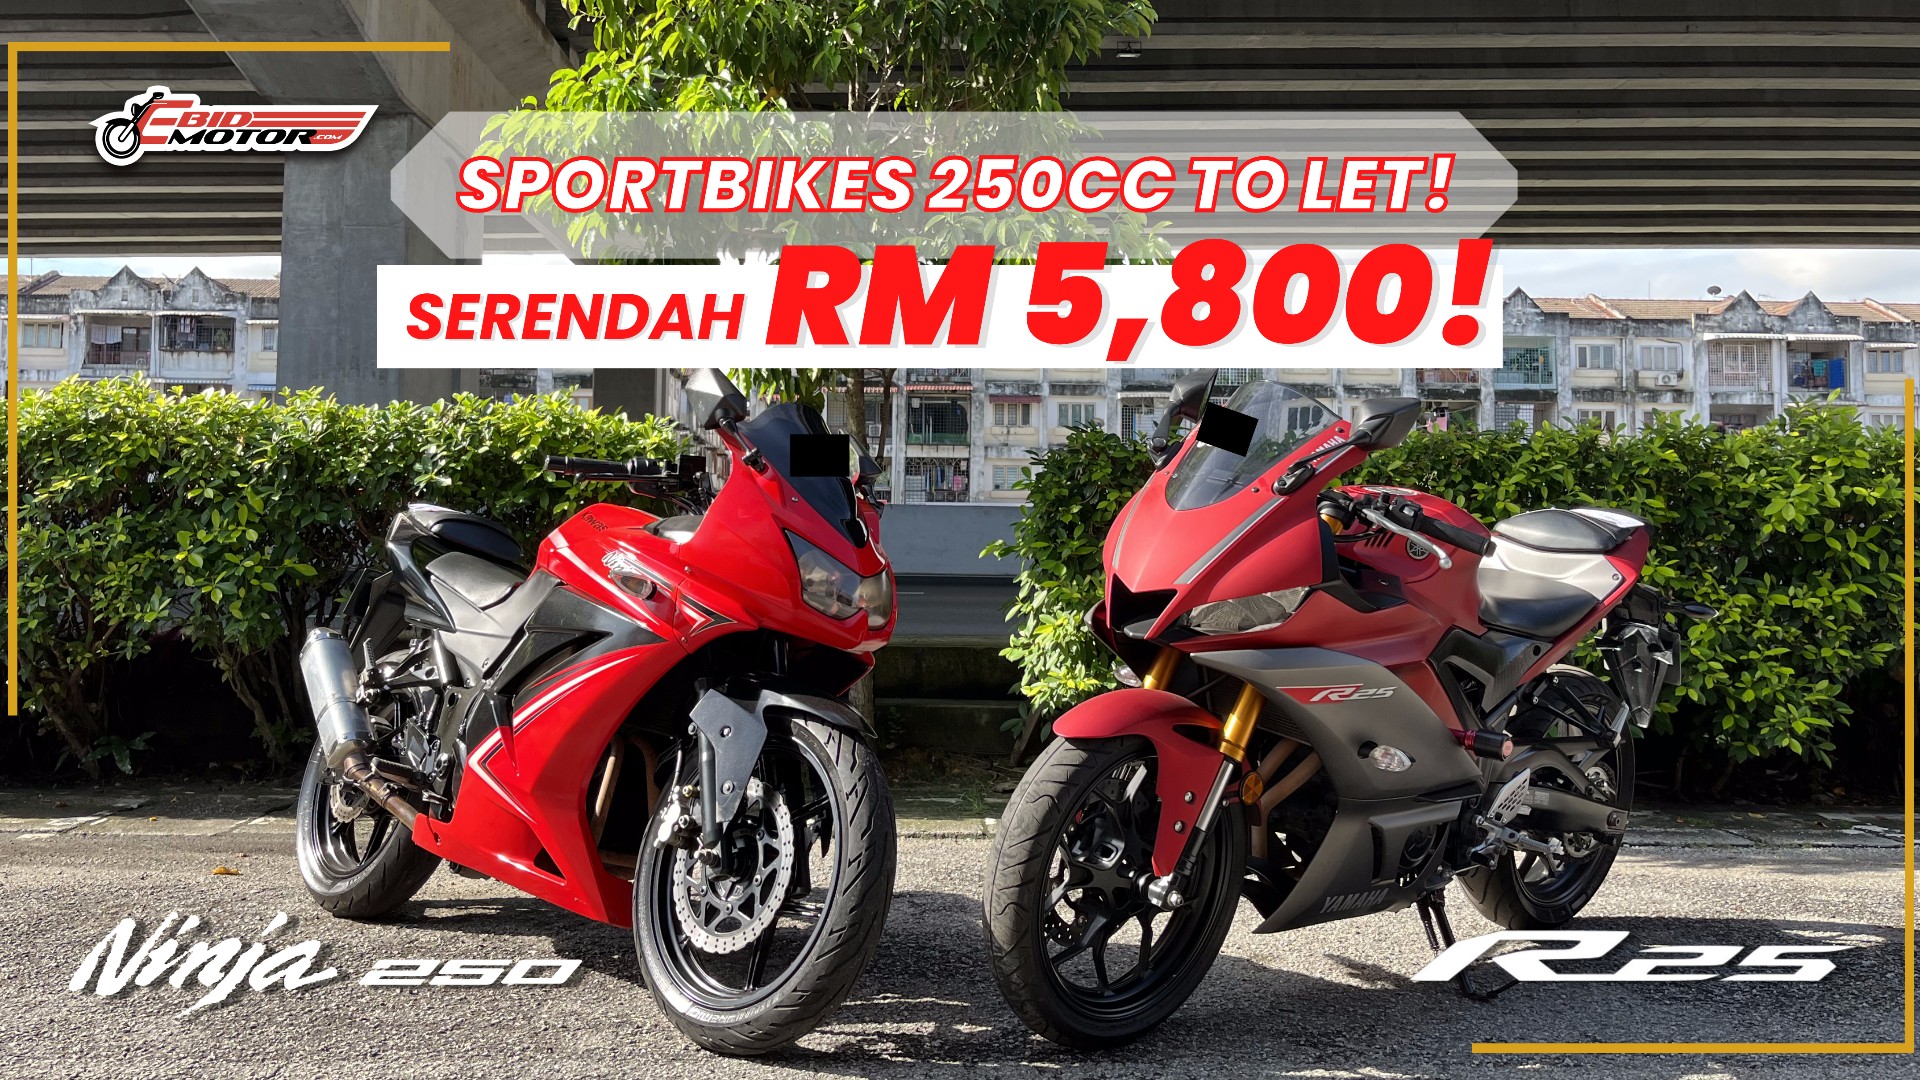 Kawasaki Ninja 250 & Yamaha R25 Serendah RM5,800 Je? Termurah Di Lembah Klang!